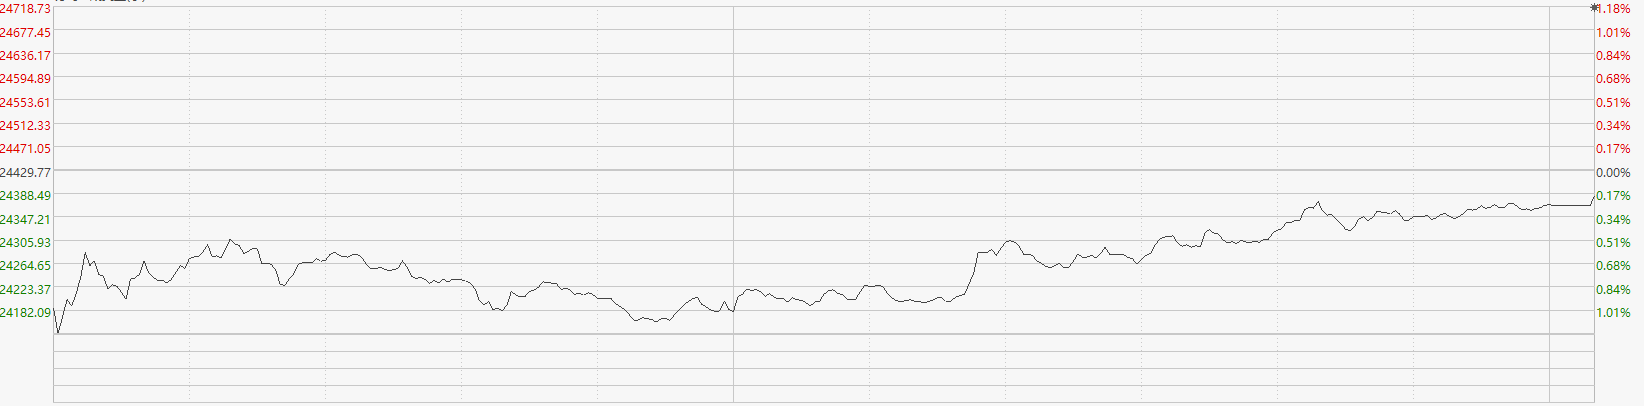 恒指收跌0.19% 博彩股集体飘红 金沙中国涨超7%